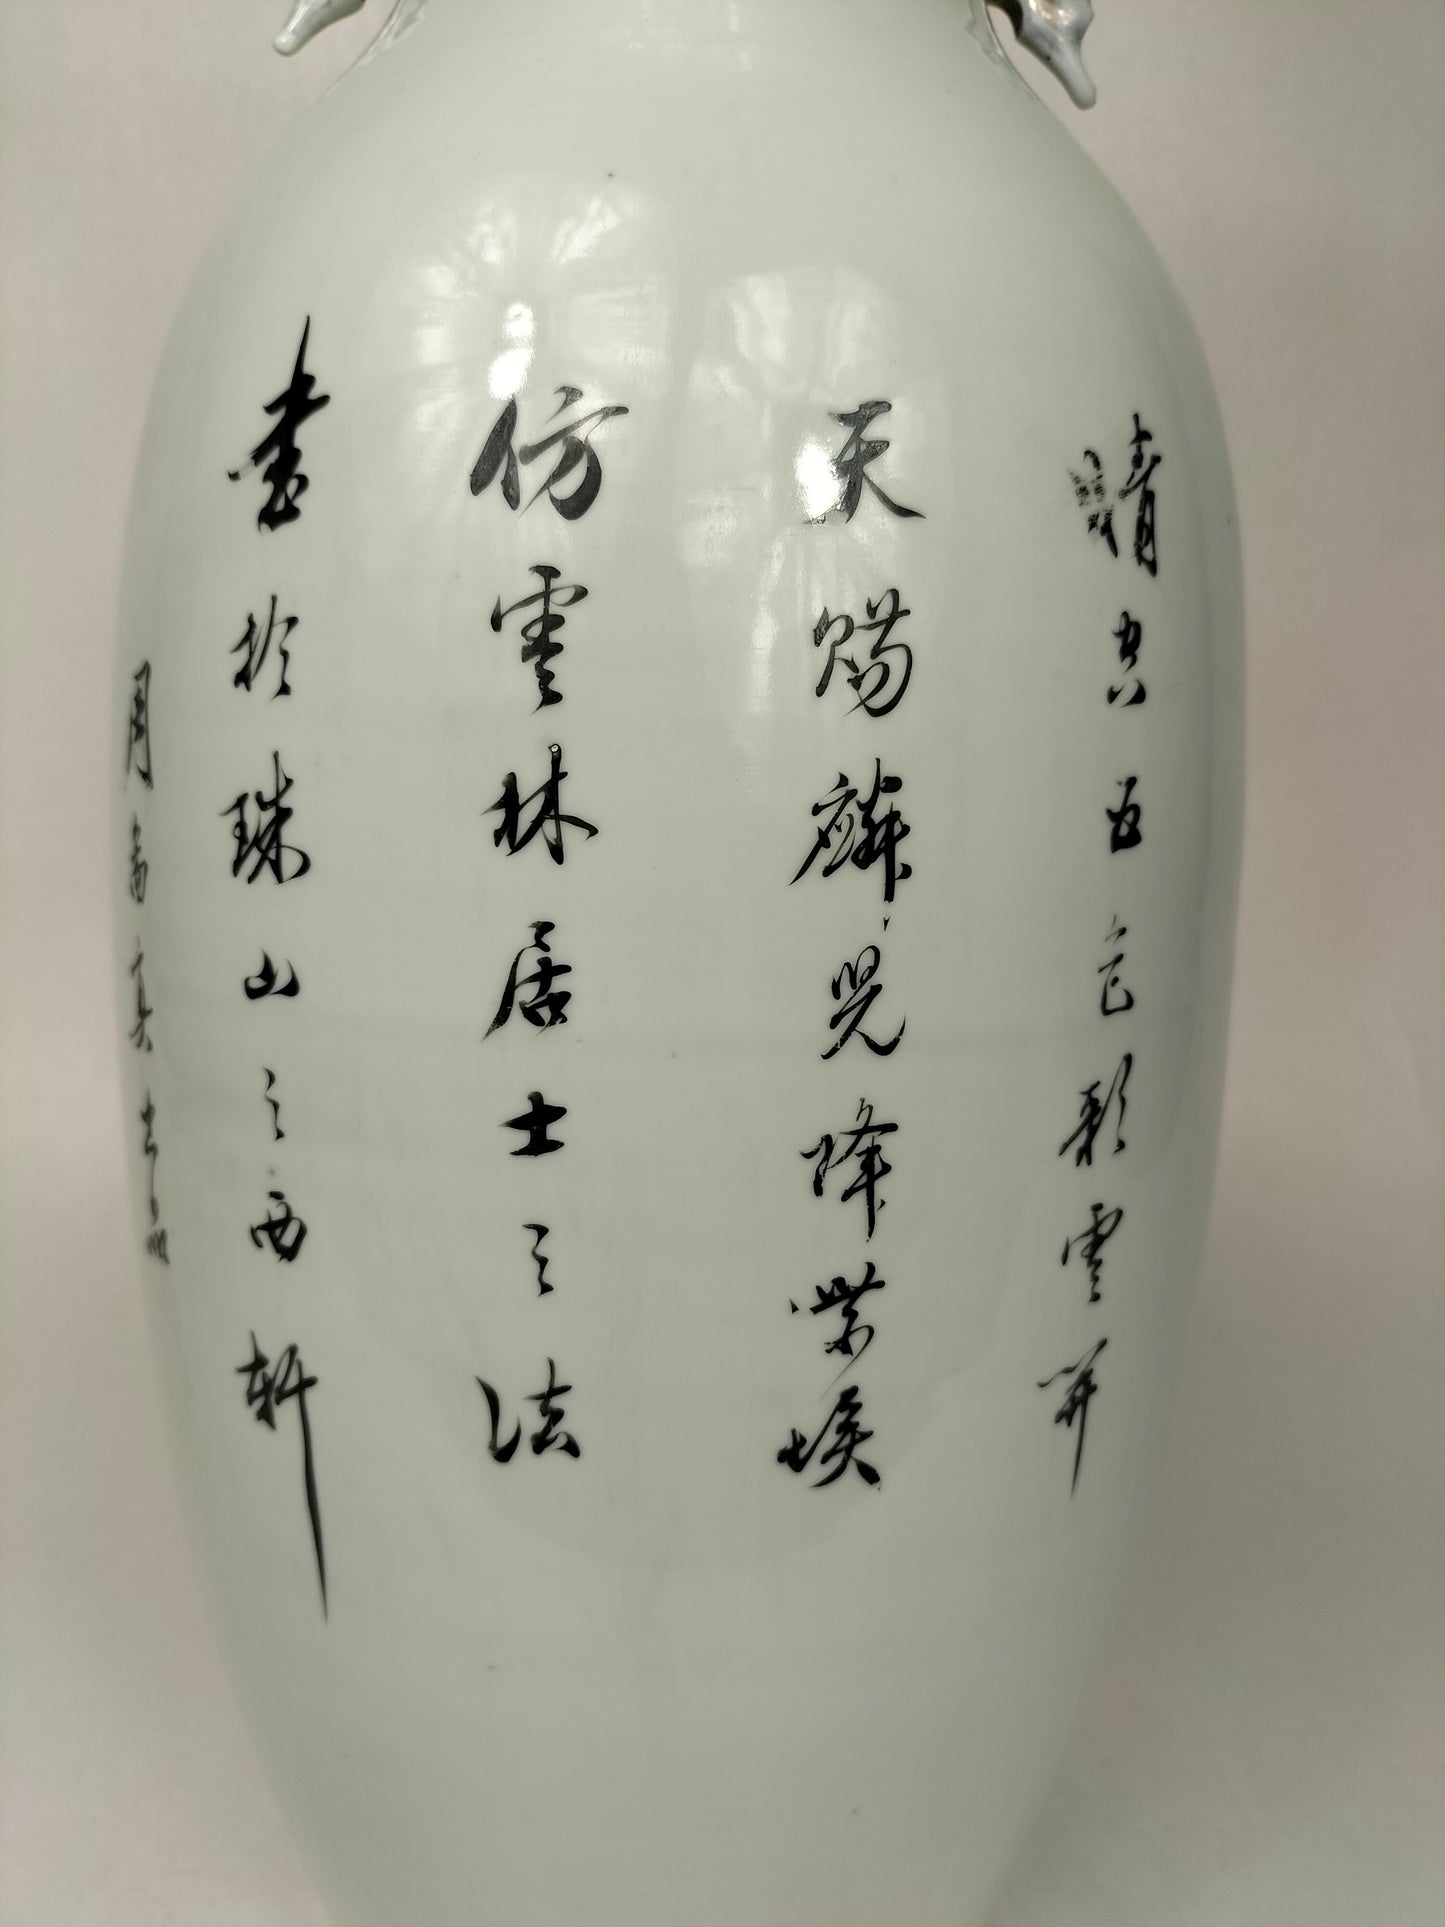 大型中国古董花瓶，饰有人物和麒麟 // 民国时期（1912-1949）